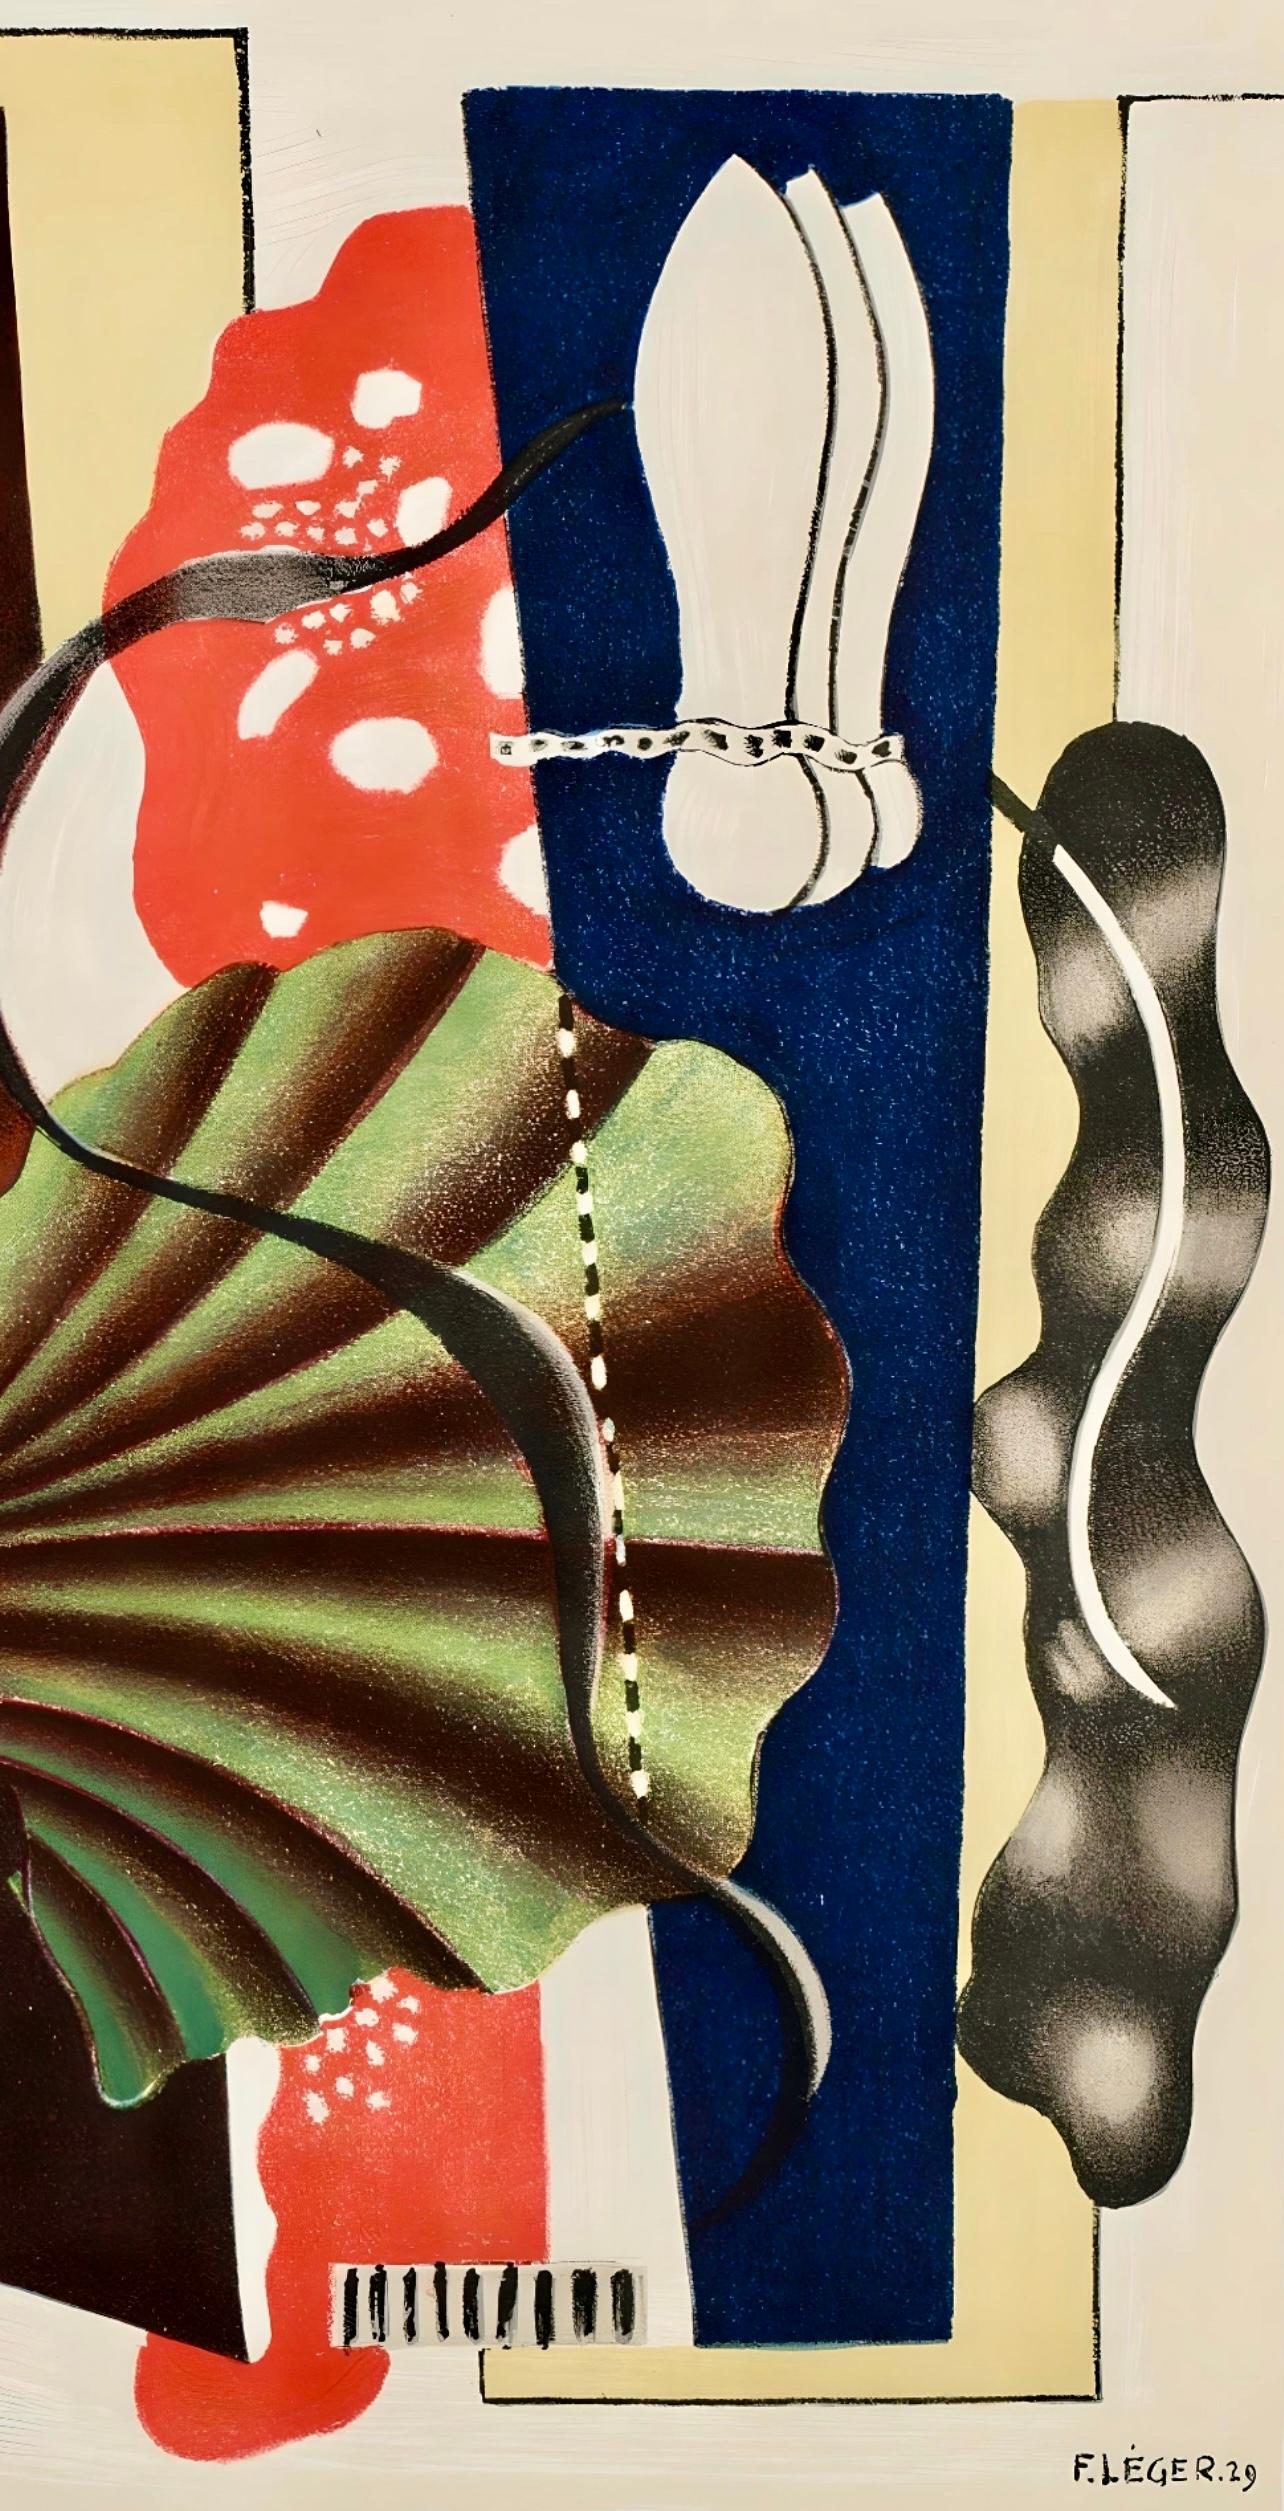 Léger, Nature morte, Derrière le miroir (after) - Modern Print by Fernand Léger